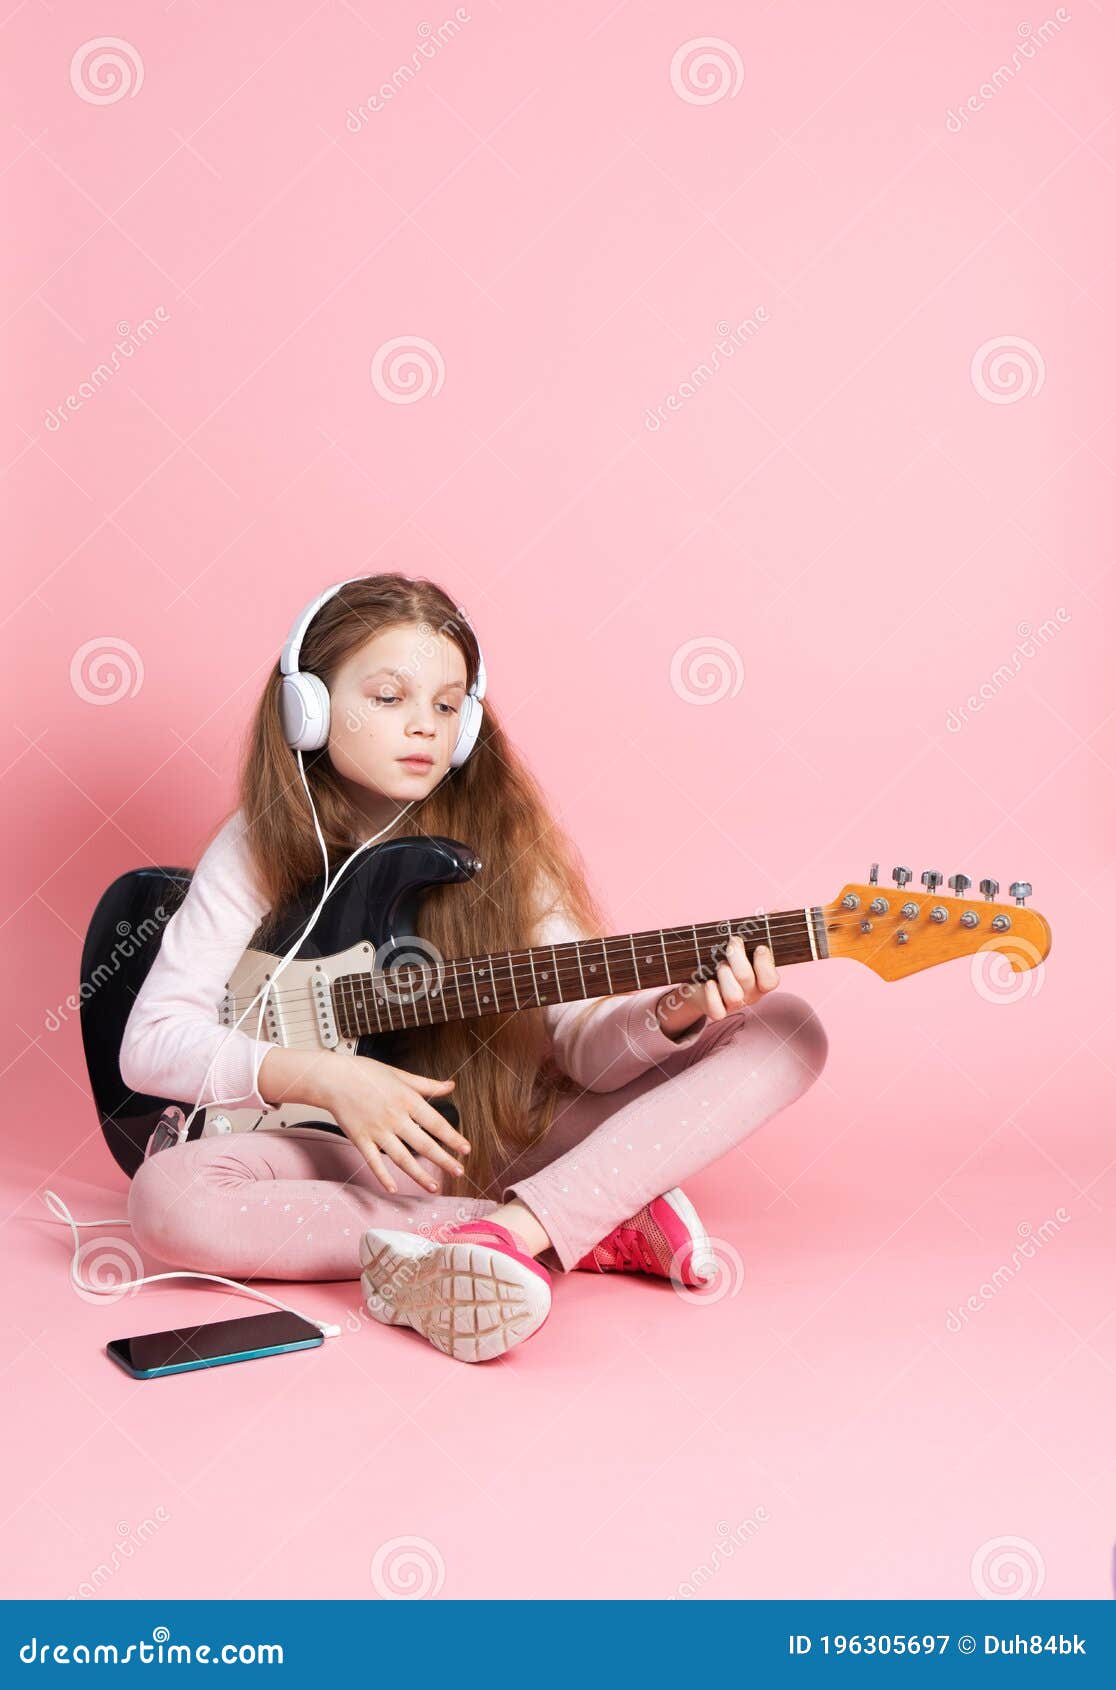 Leçons De Musique Écolière Apprend à Jouer De La Guitare électrique Image Stock Image Du